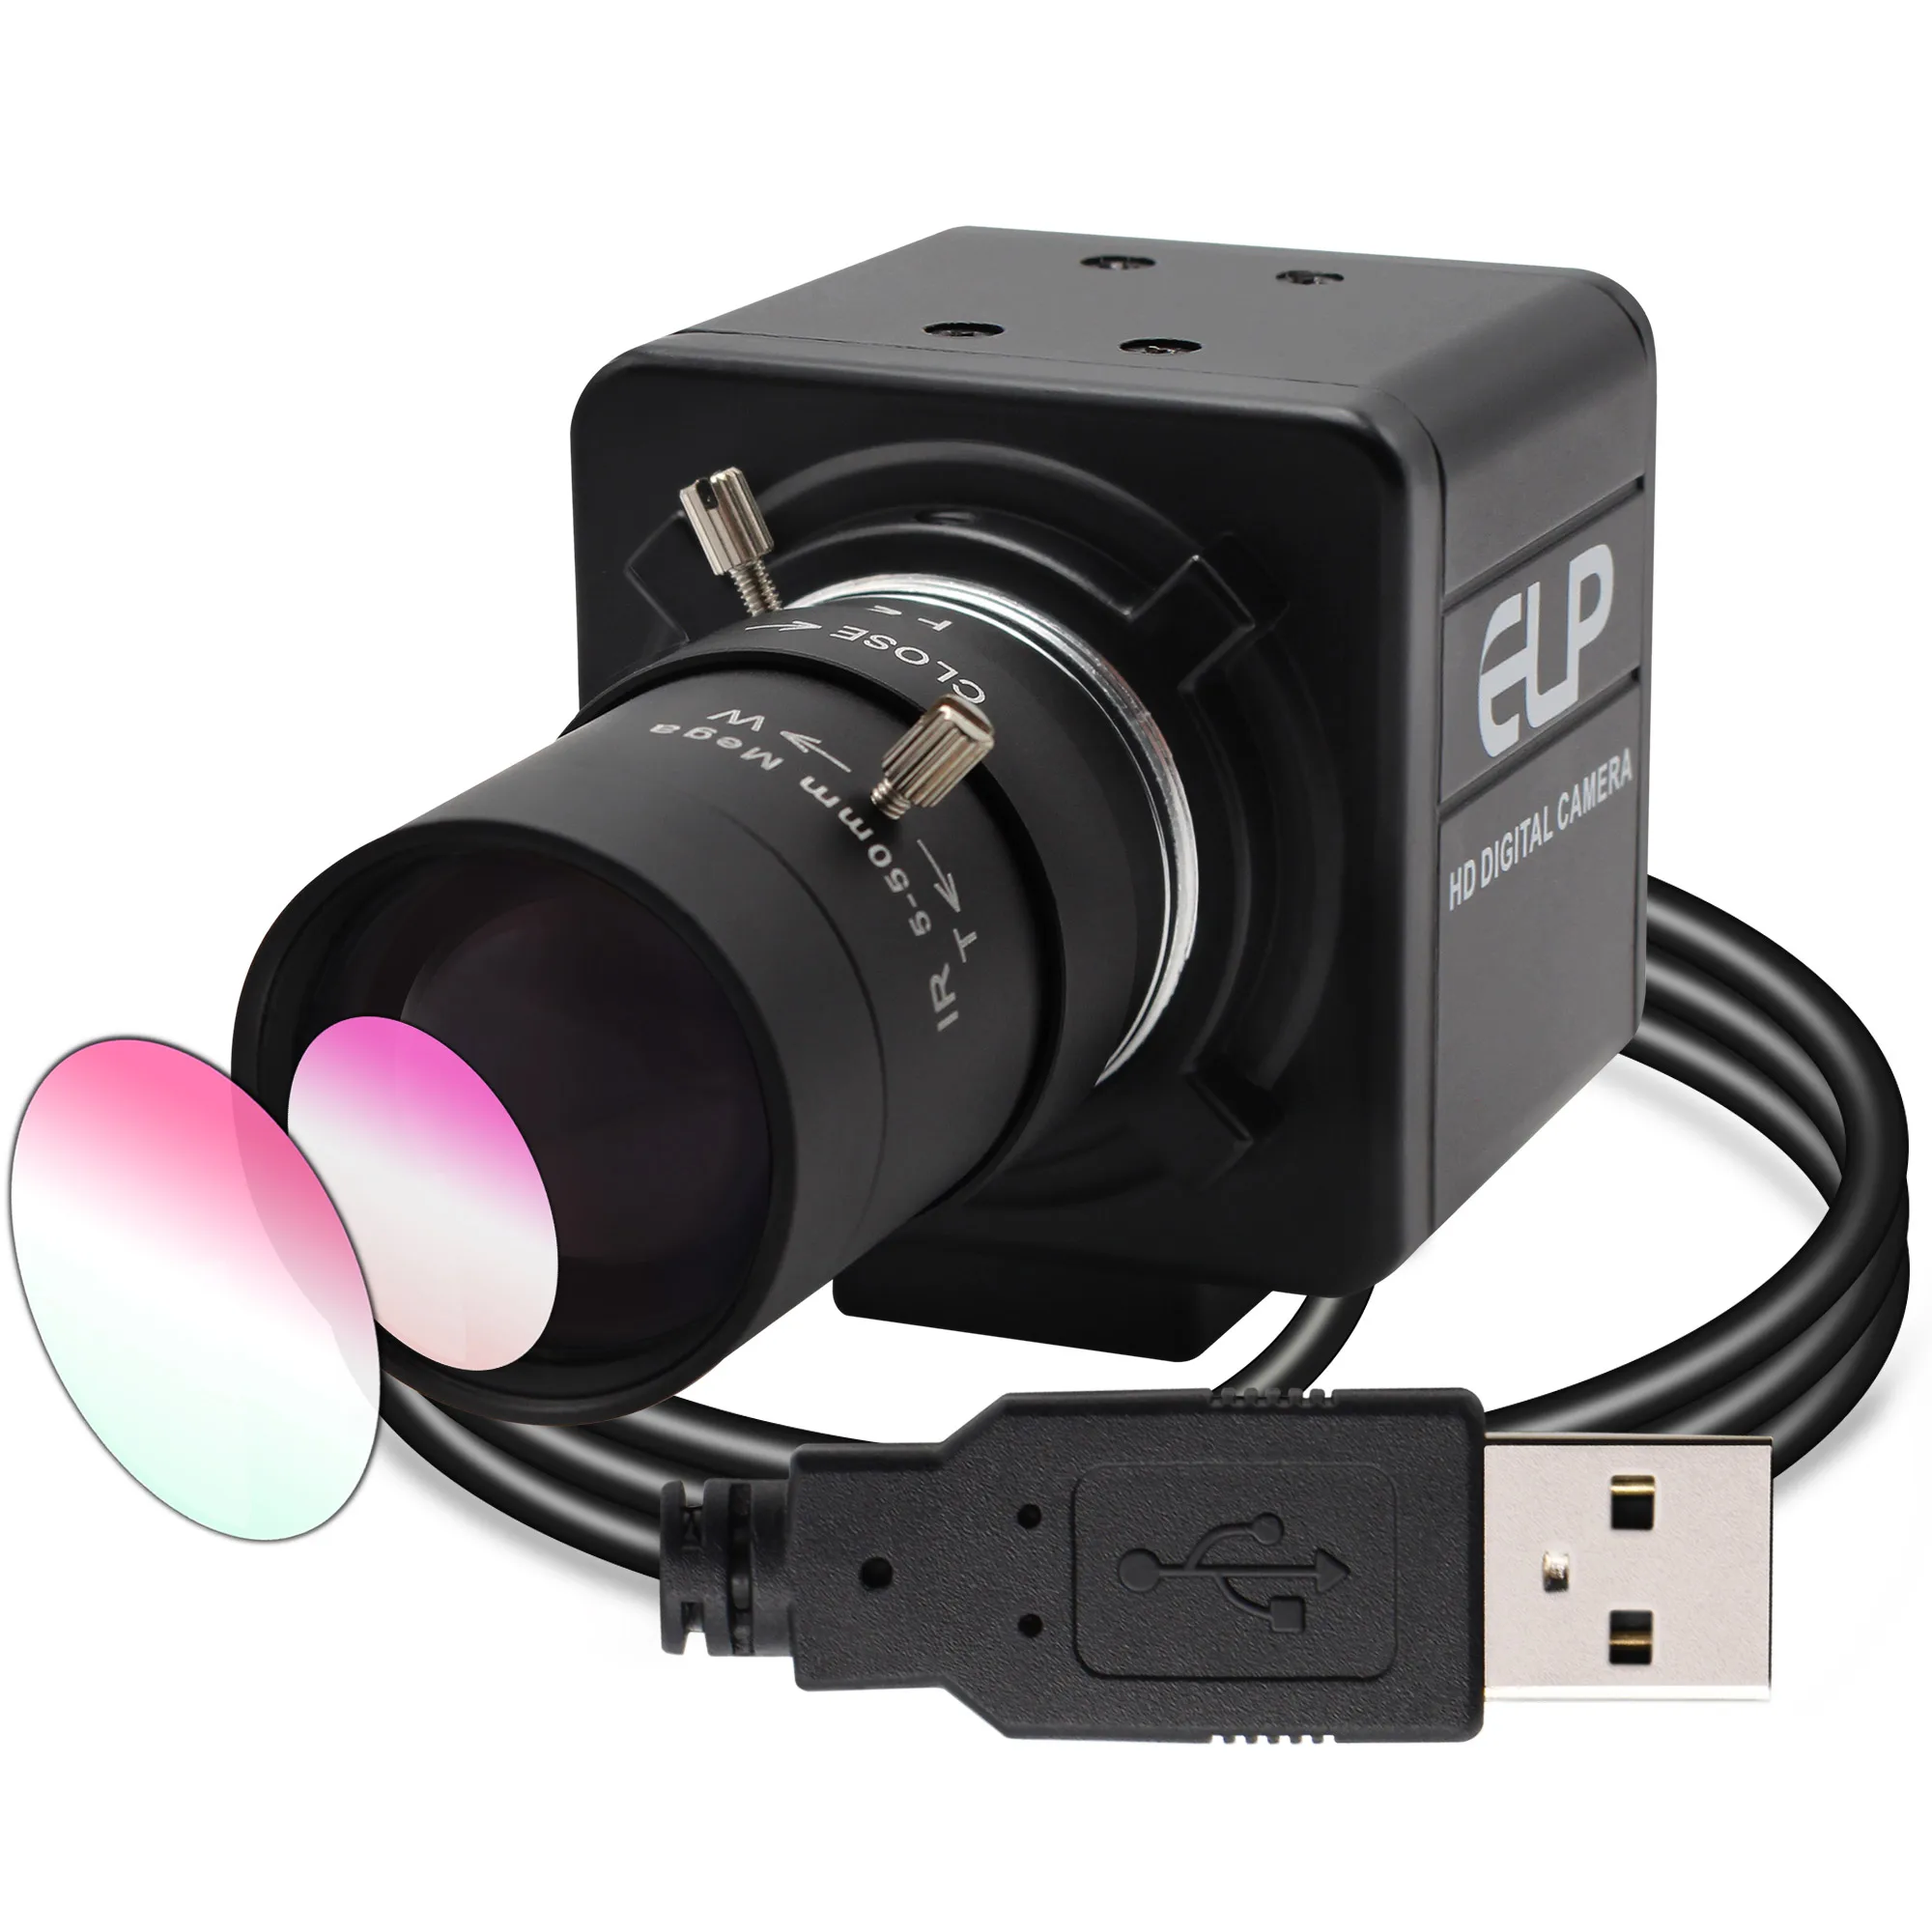 ELP IMX291 USB 3.0 Мини-Веб-камера MJPEG 50 кадров в секунду 2-Мегапиксельная Высокоскоростная ПК-Камера 1080P USB с Ручным Зумом и Варифокальным CS-Объективом 1